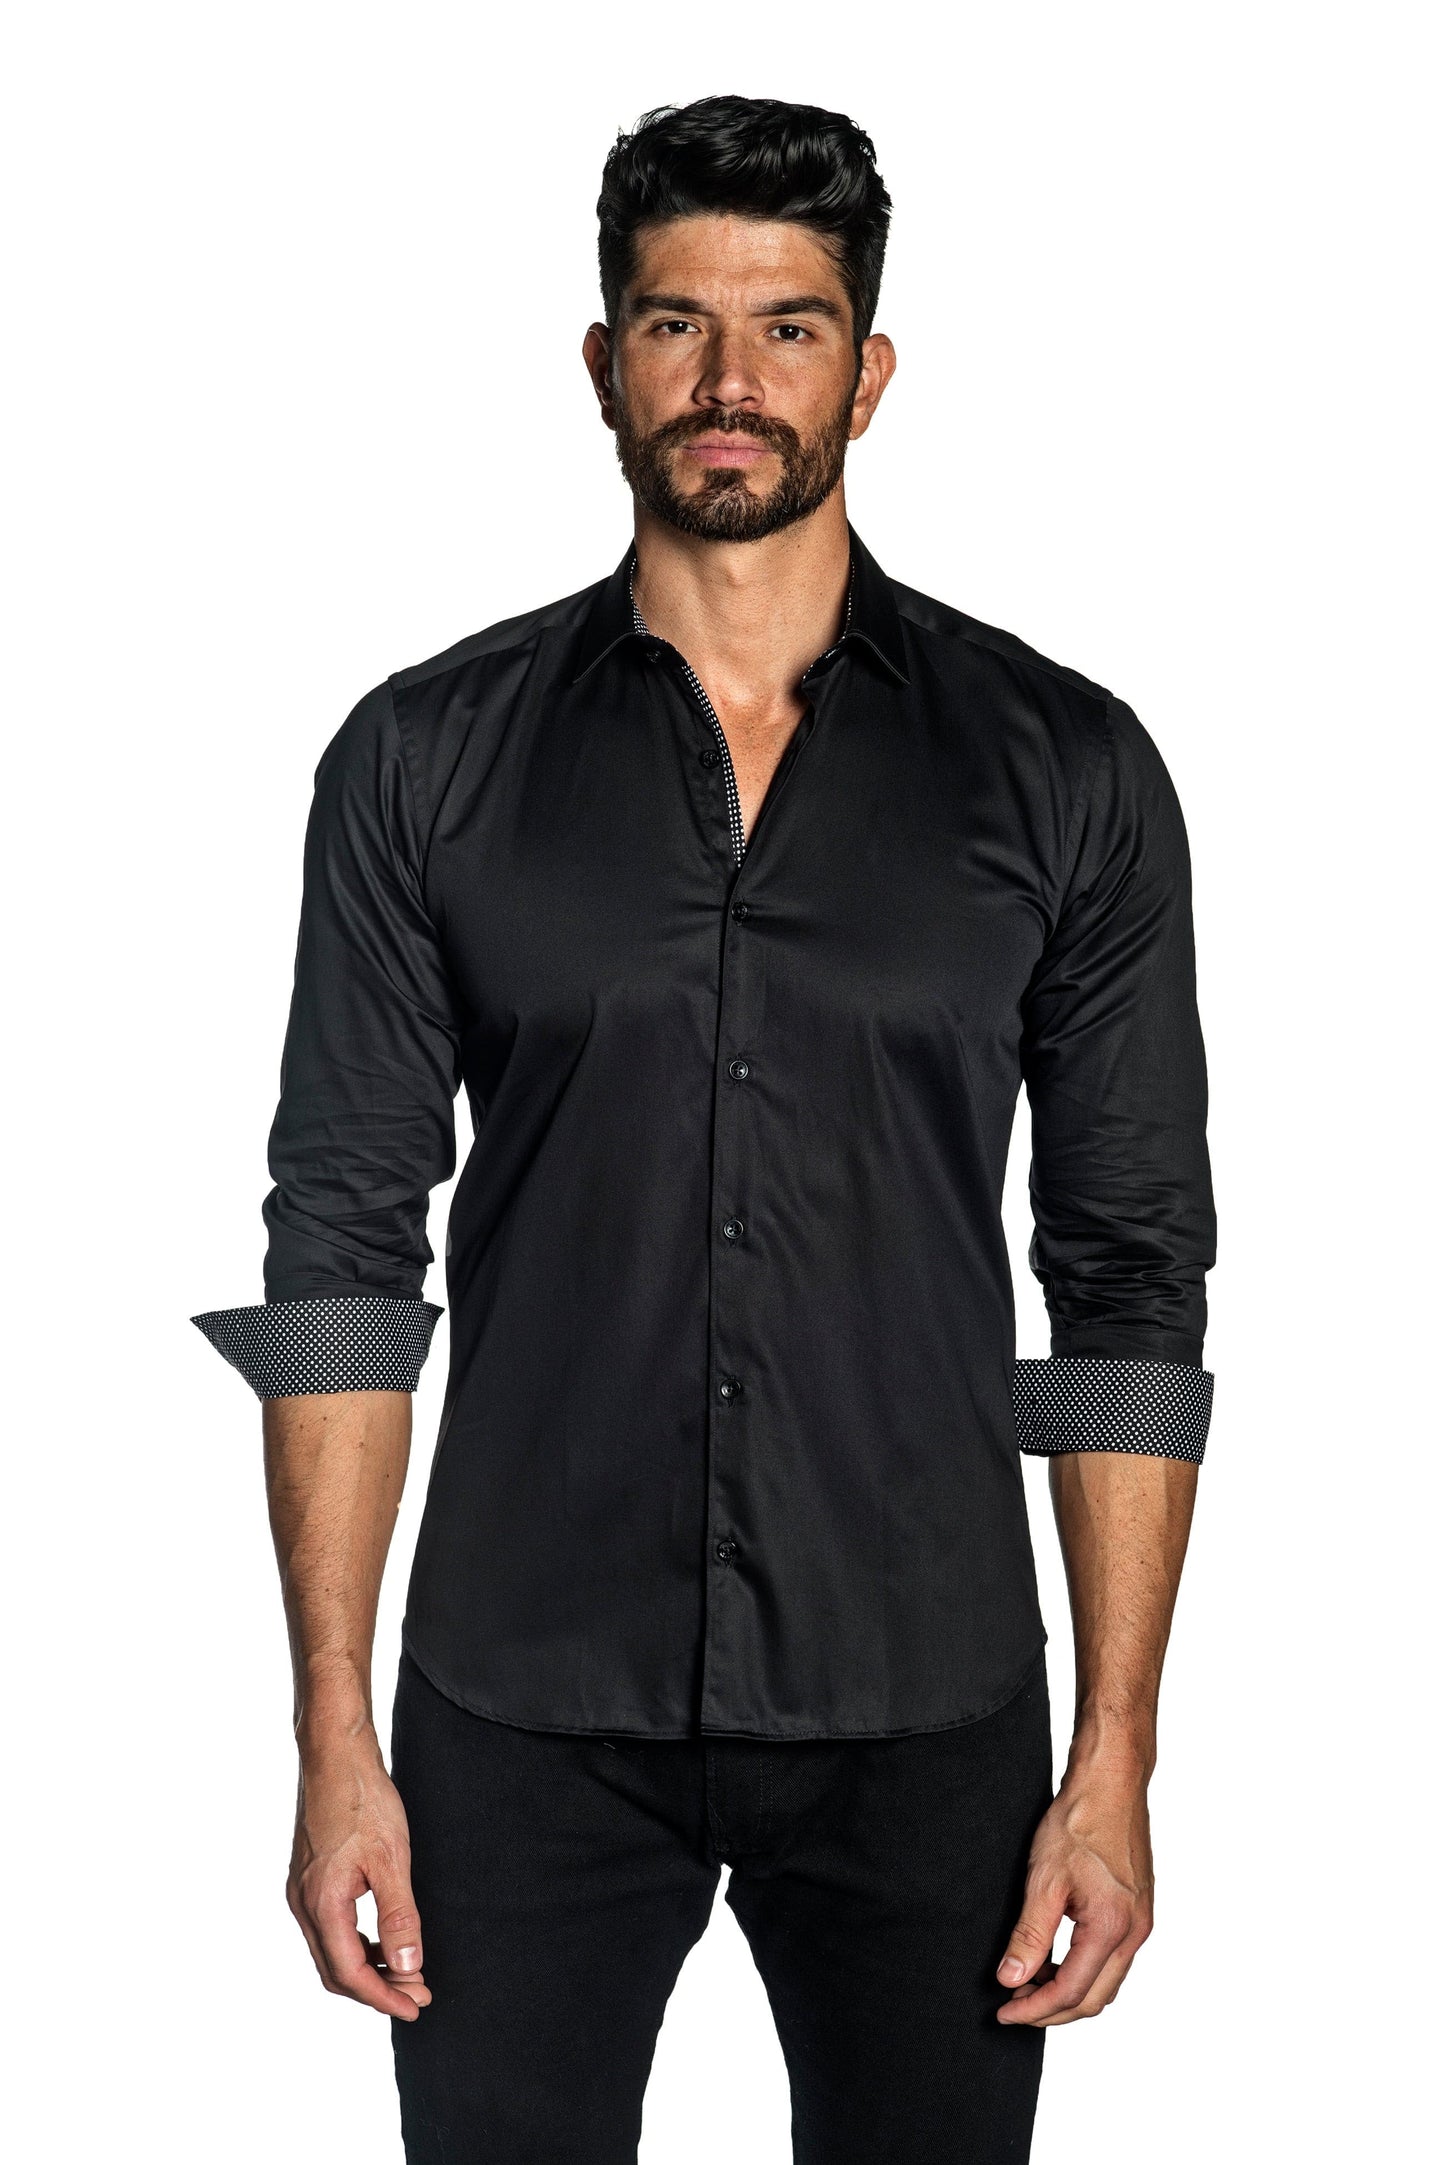 Black Long Sleeve Shirt T-2072 - Front - Jared Lang